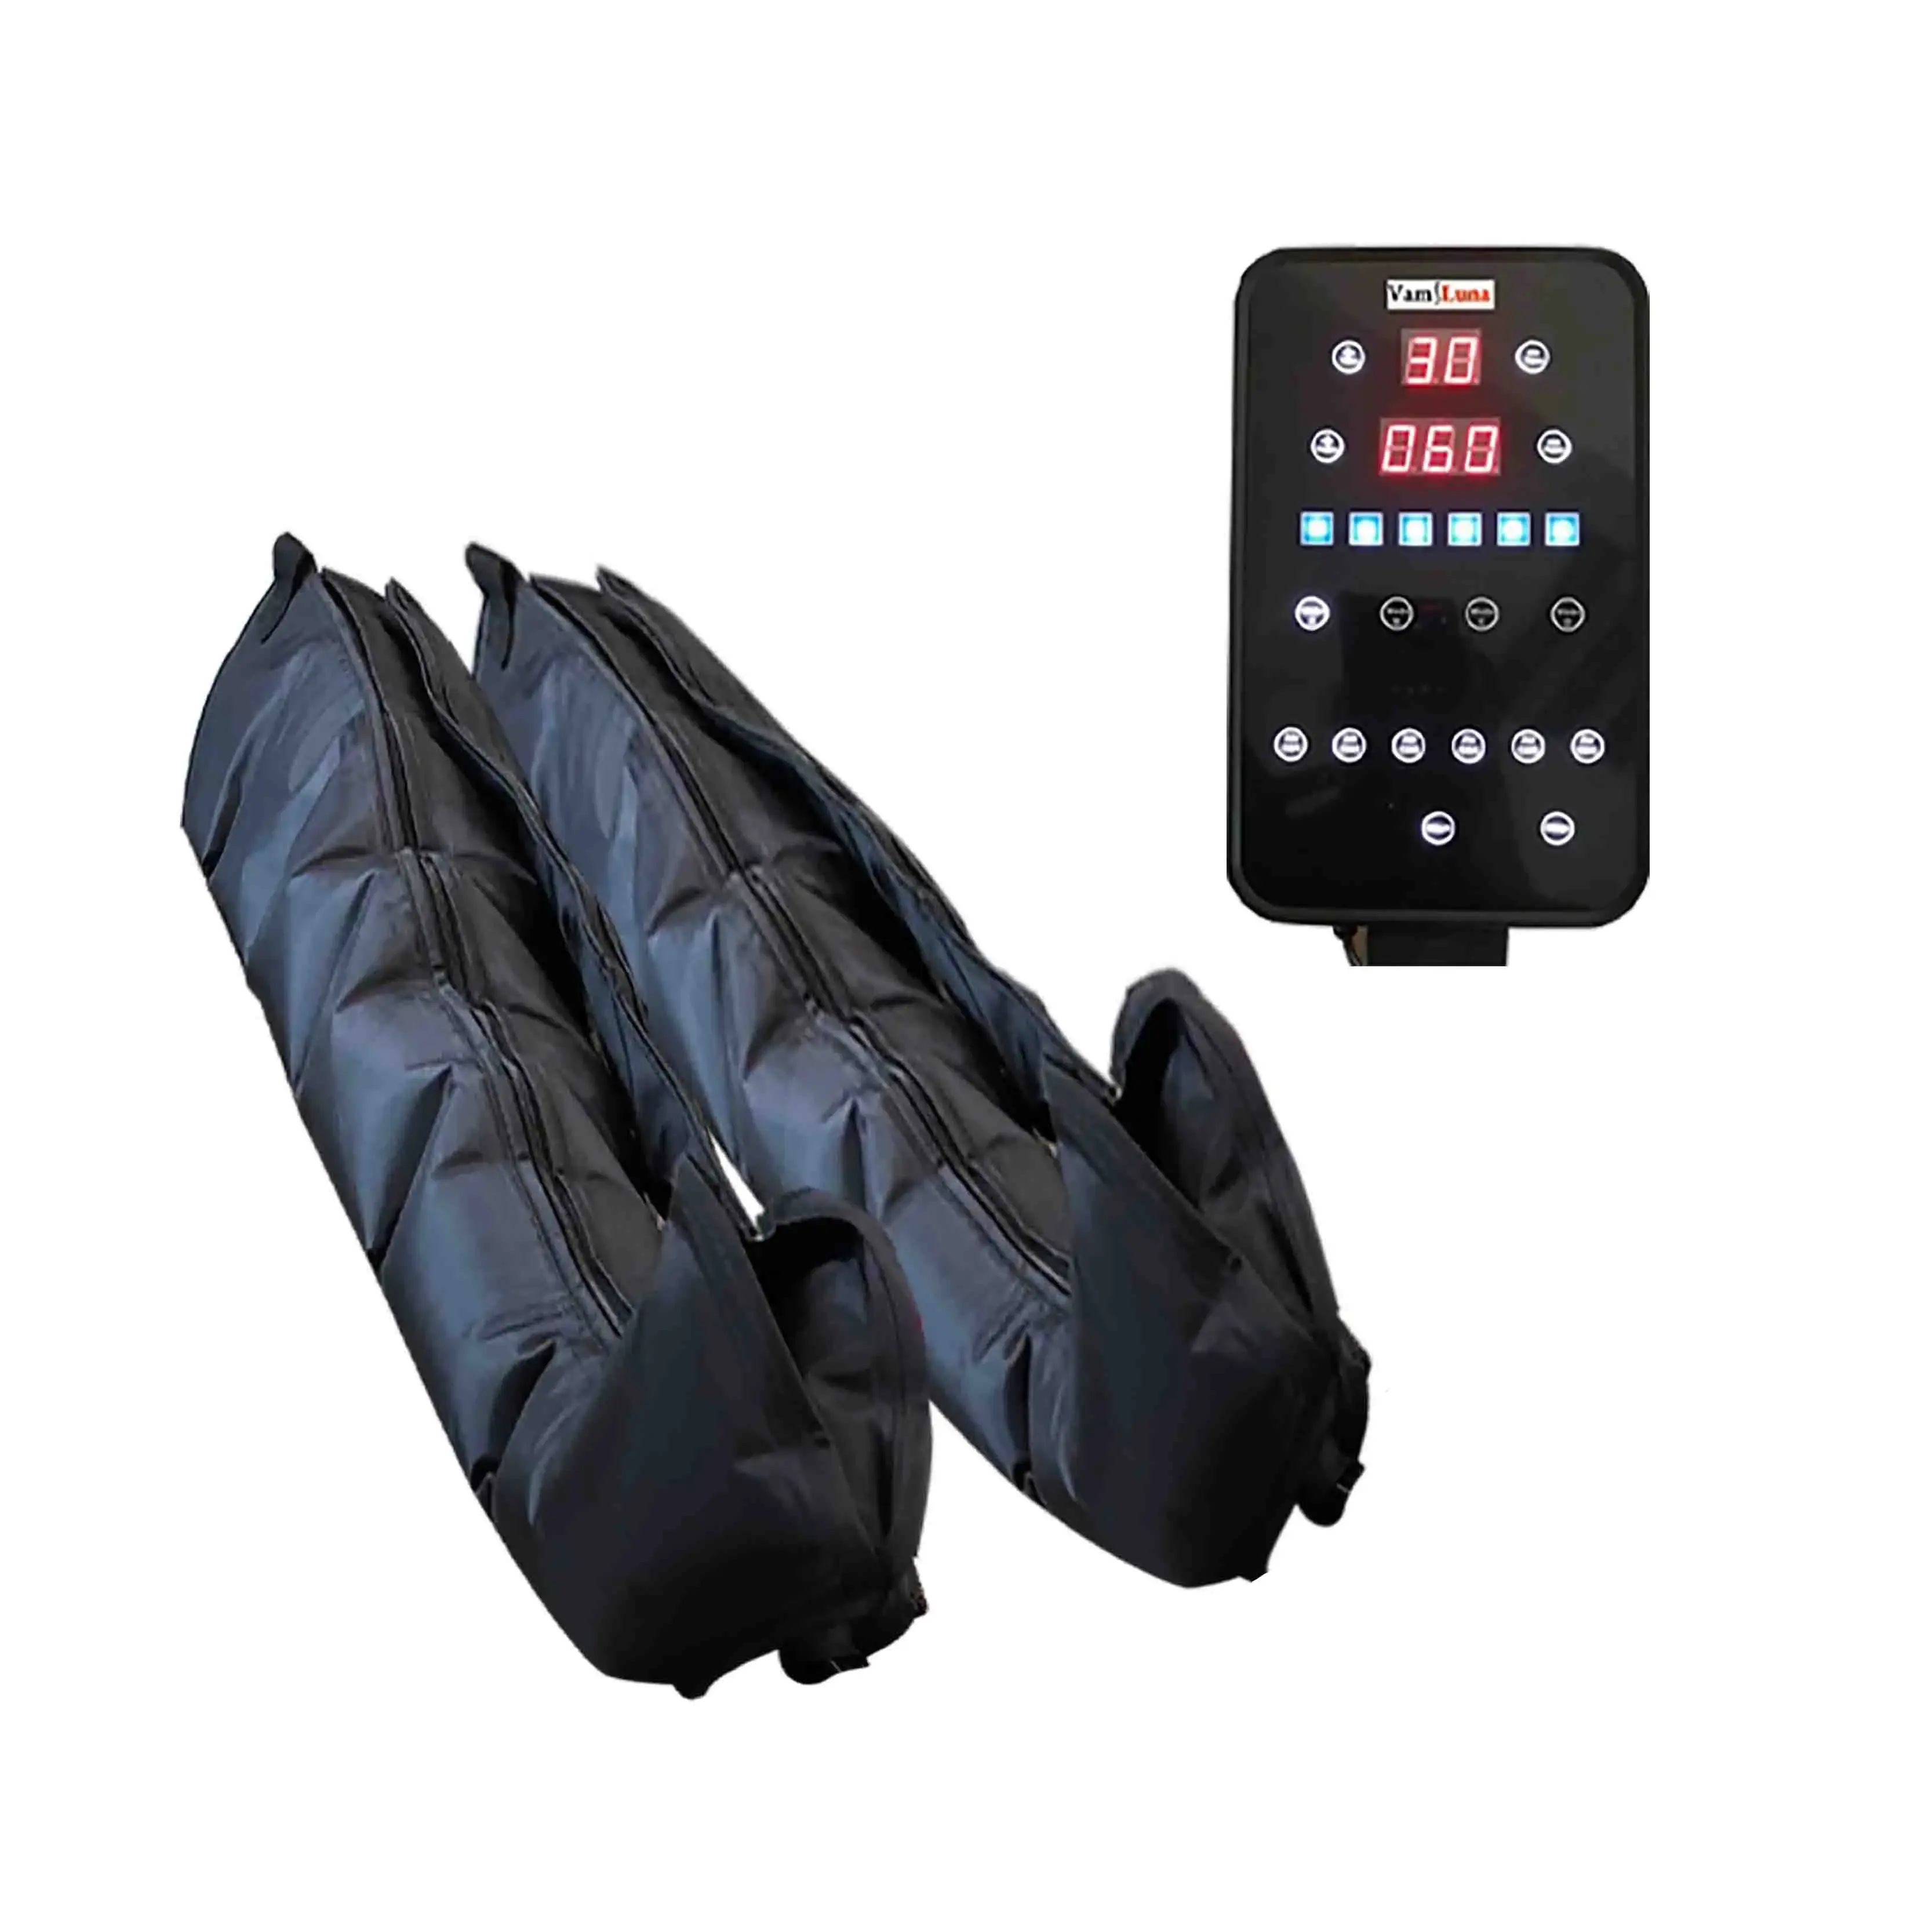 Alat pemijat kompresi udara XXL, Set pembungkus pompa sirkulasi udara dengan 6 bantalan udara untuk pijat perut dan kaki dan pompa tekanan